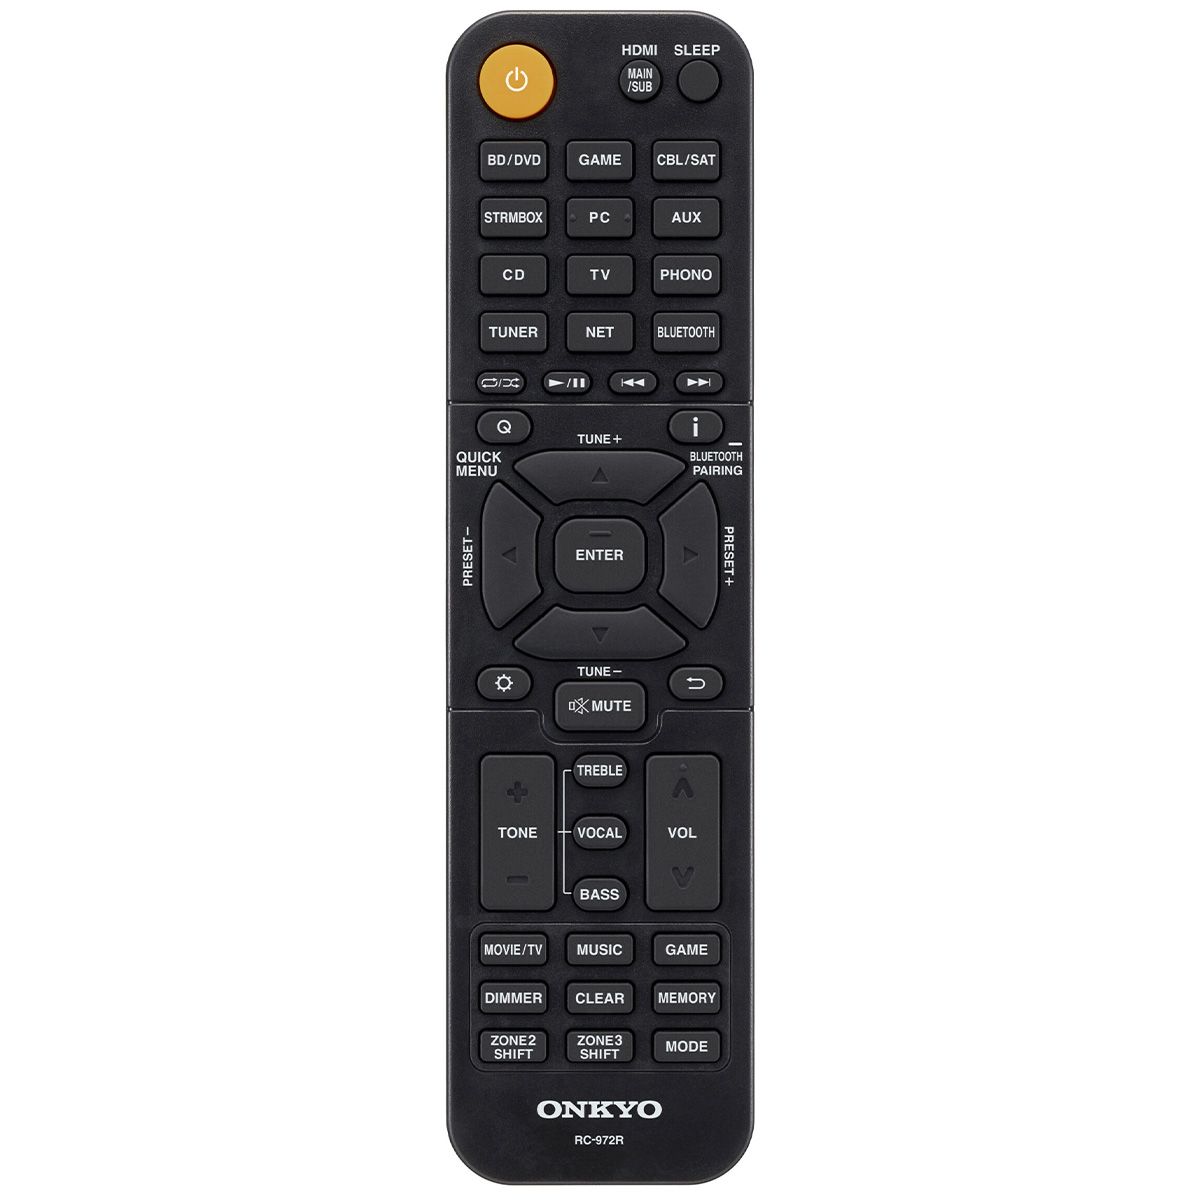 Onkyo TX-NR6100 remote